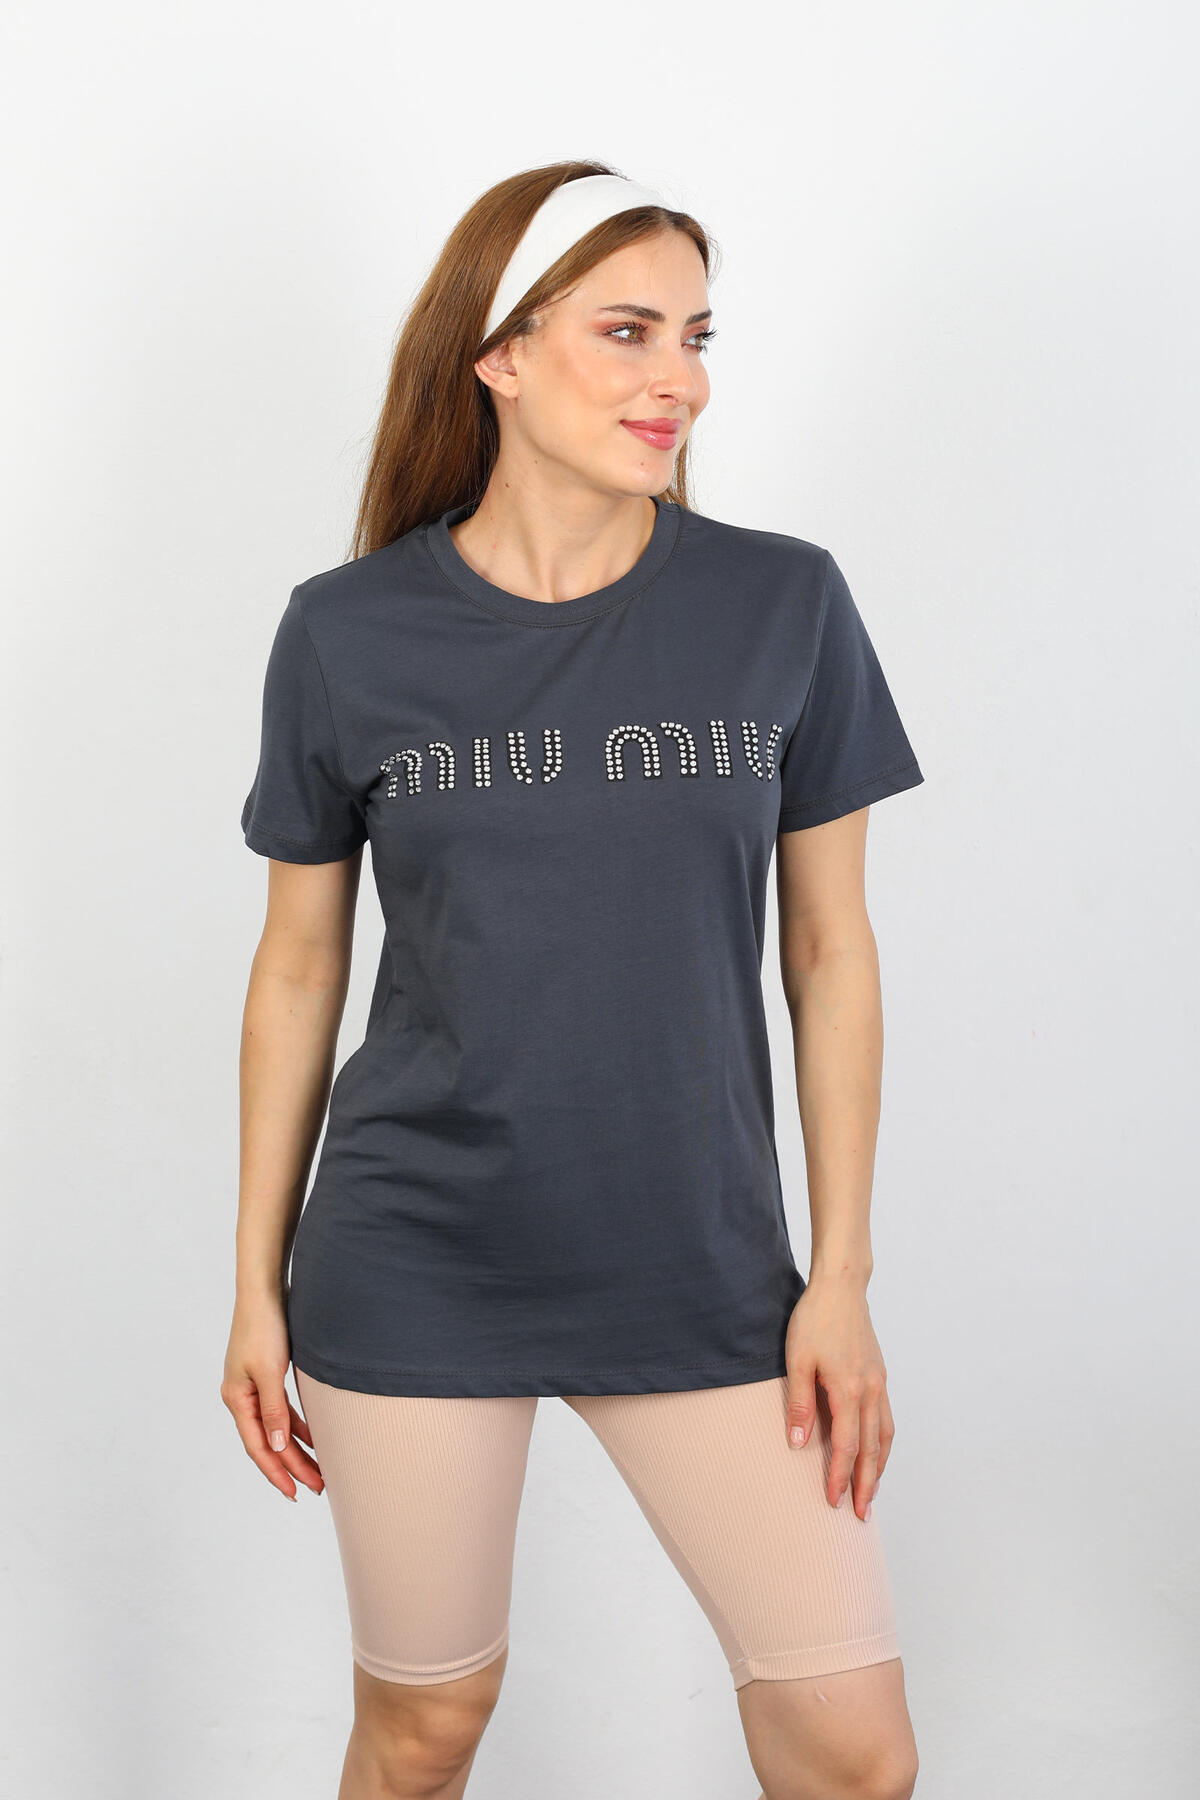 Berox - MIU MIU Taş Baskılı Antrasit Kadın T-shirt